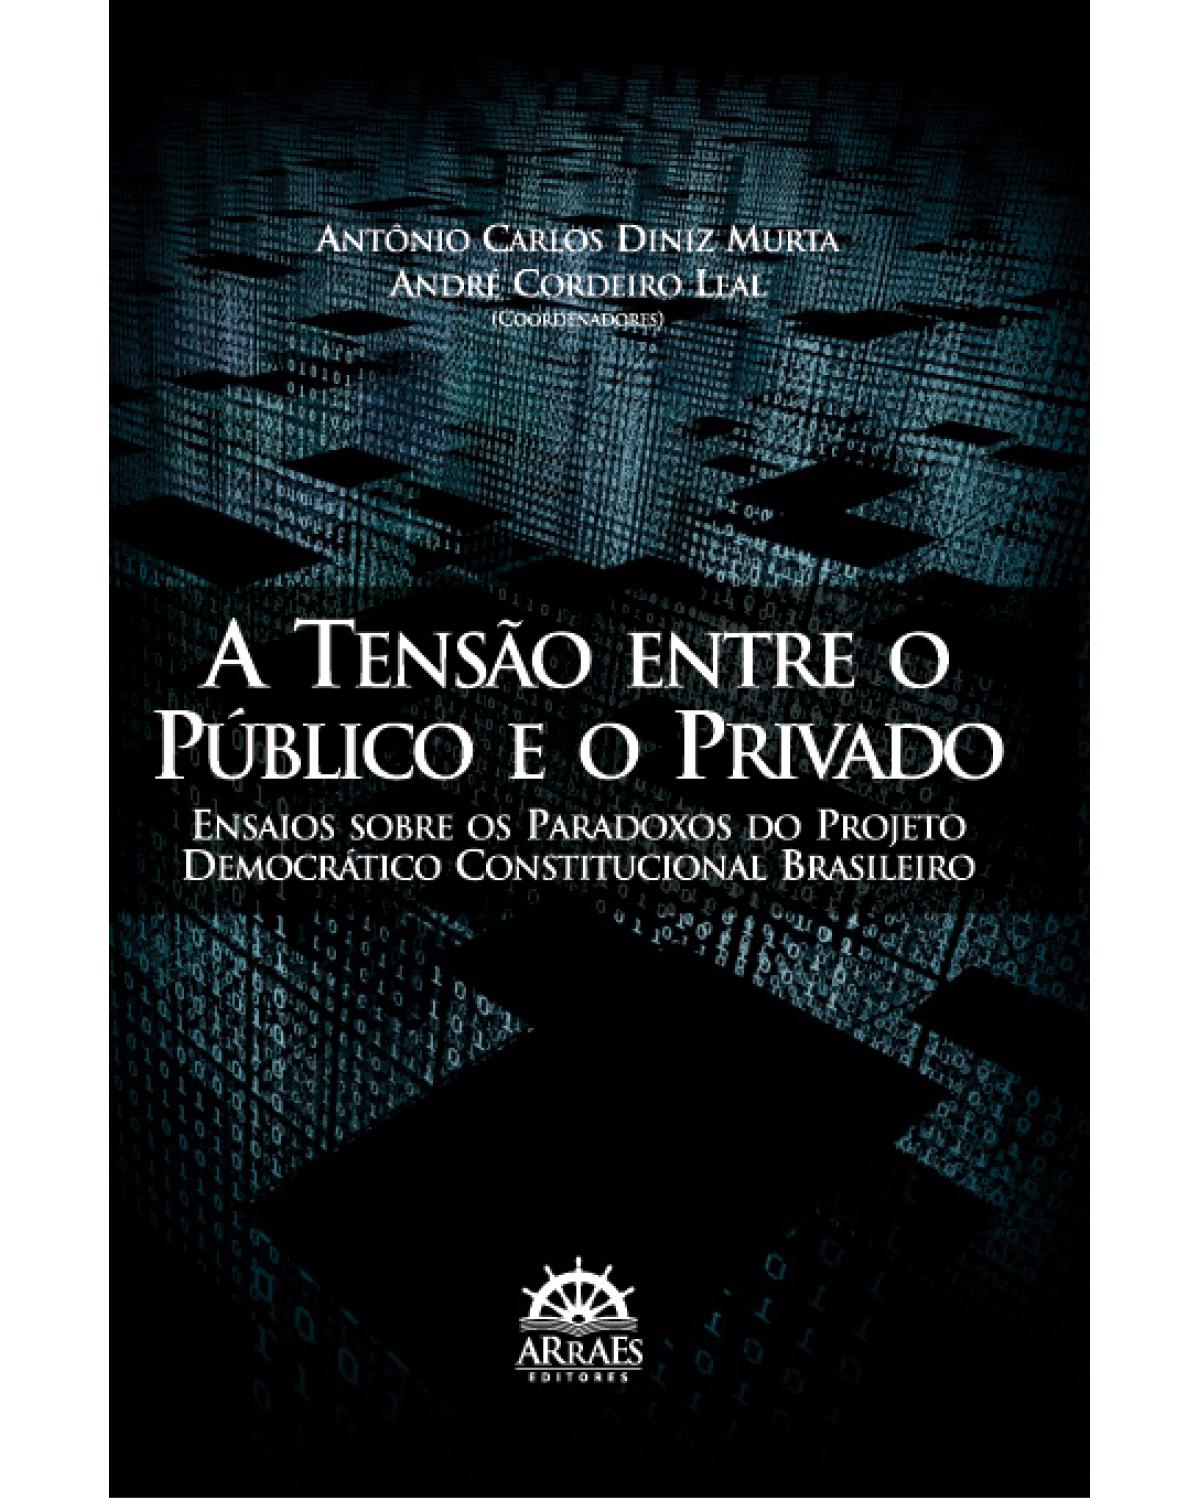 A tensão entre o público e o privado - ensaios sobre os paradoxos do projeto democrático constitucional brasileiro - 1ª Edição | 2012